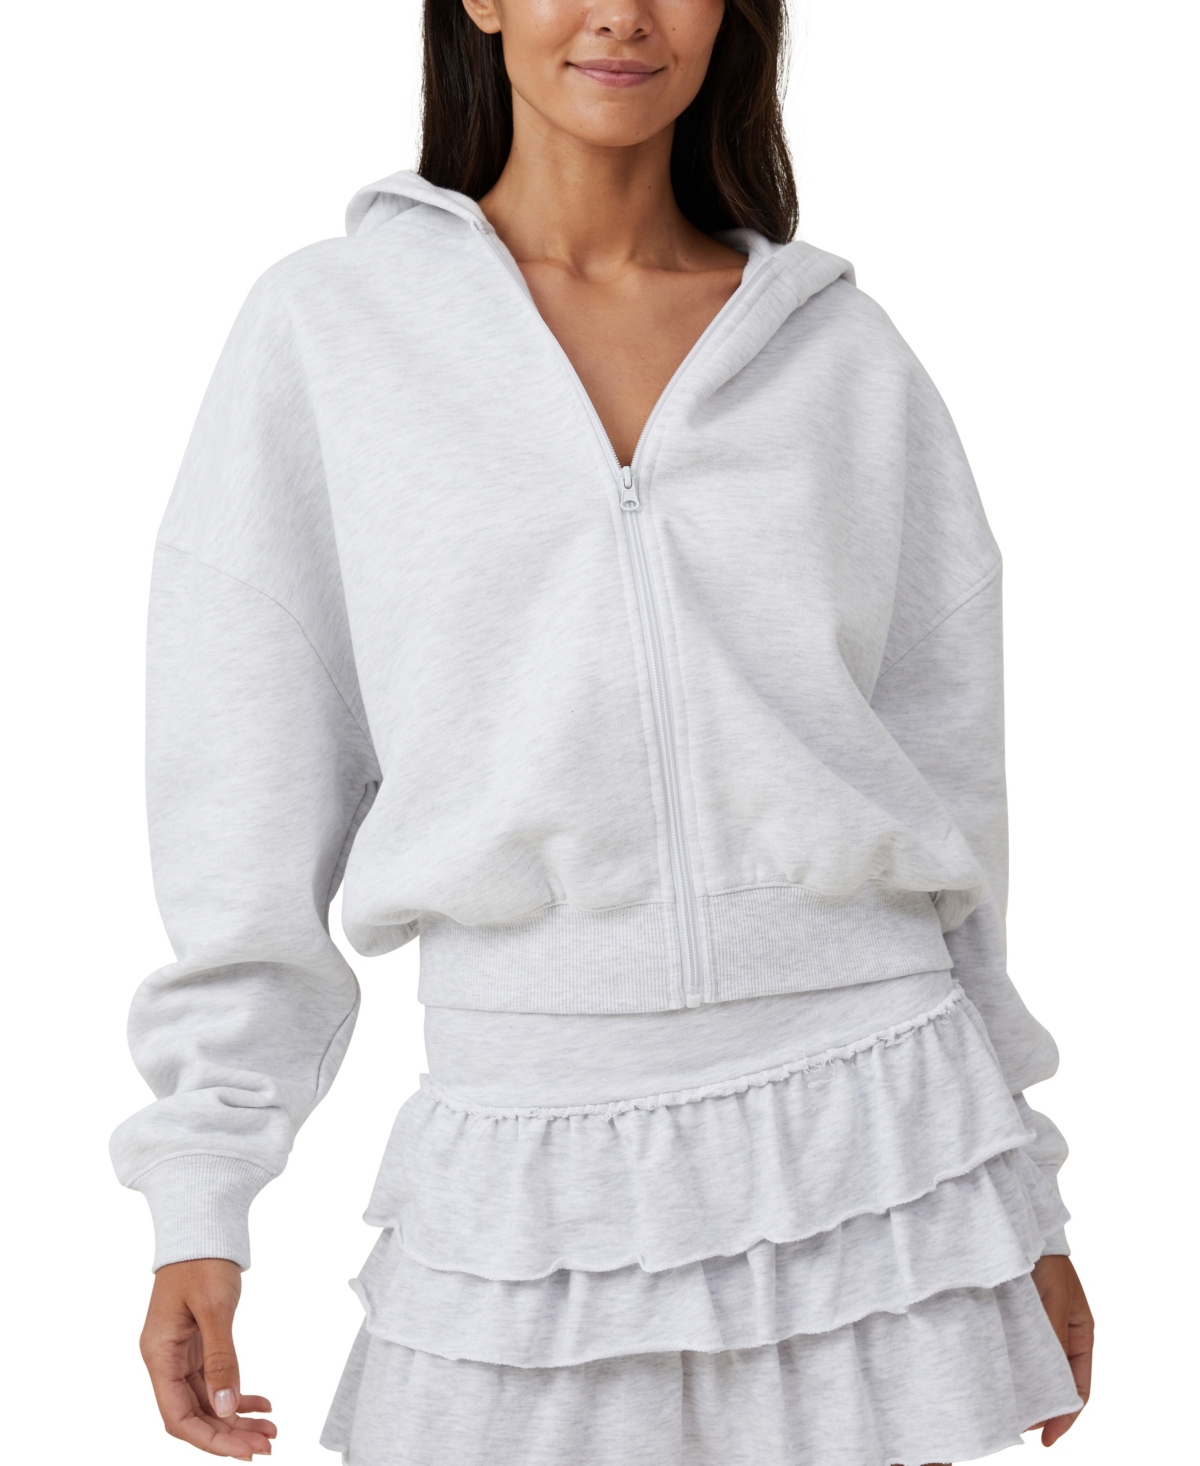 Women's Zip Up Lounge Hoodie Sweatshirt - Grey